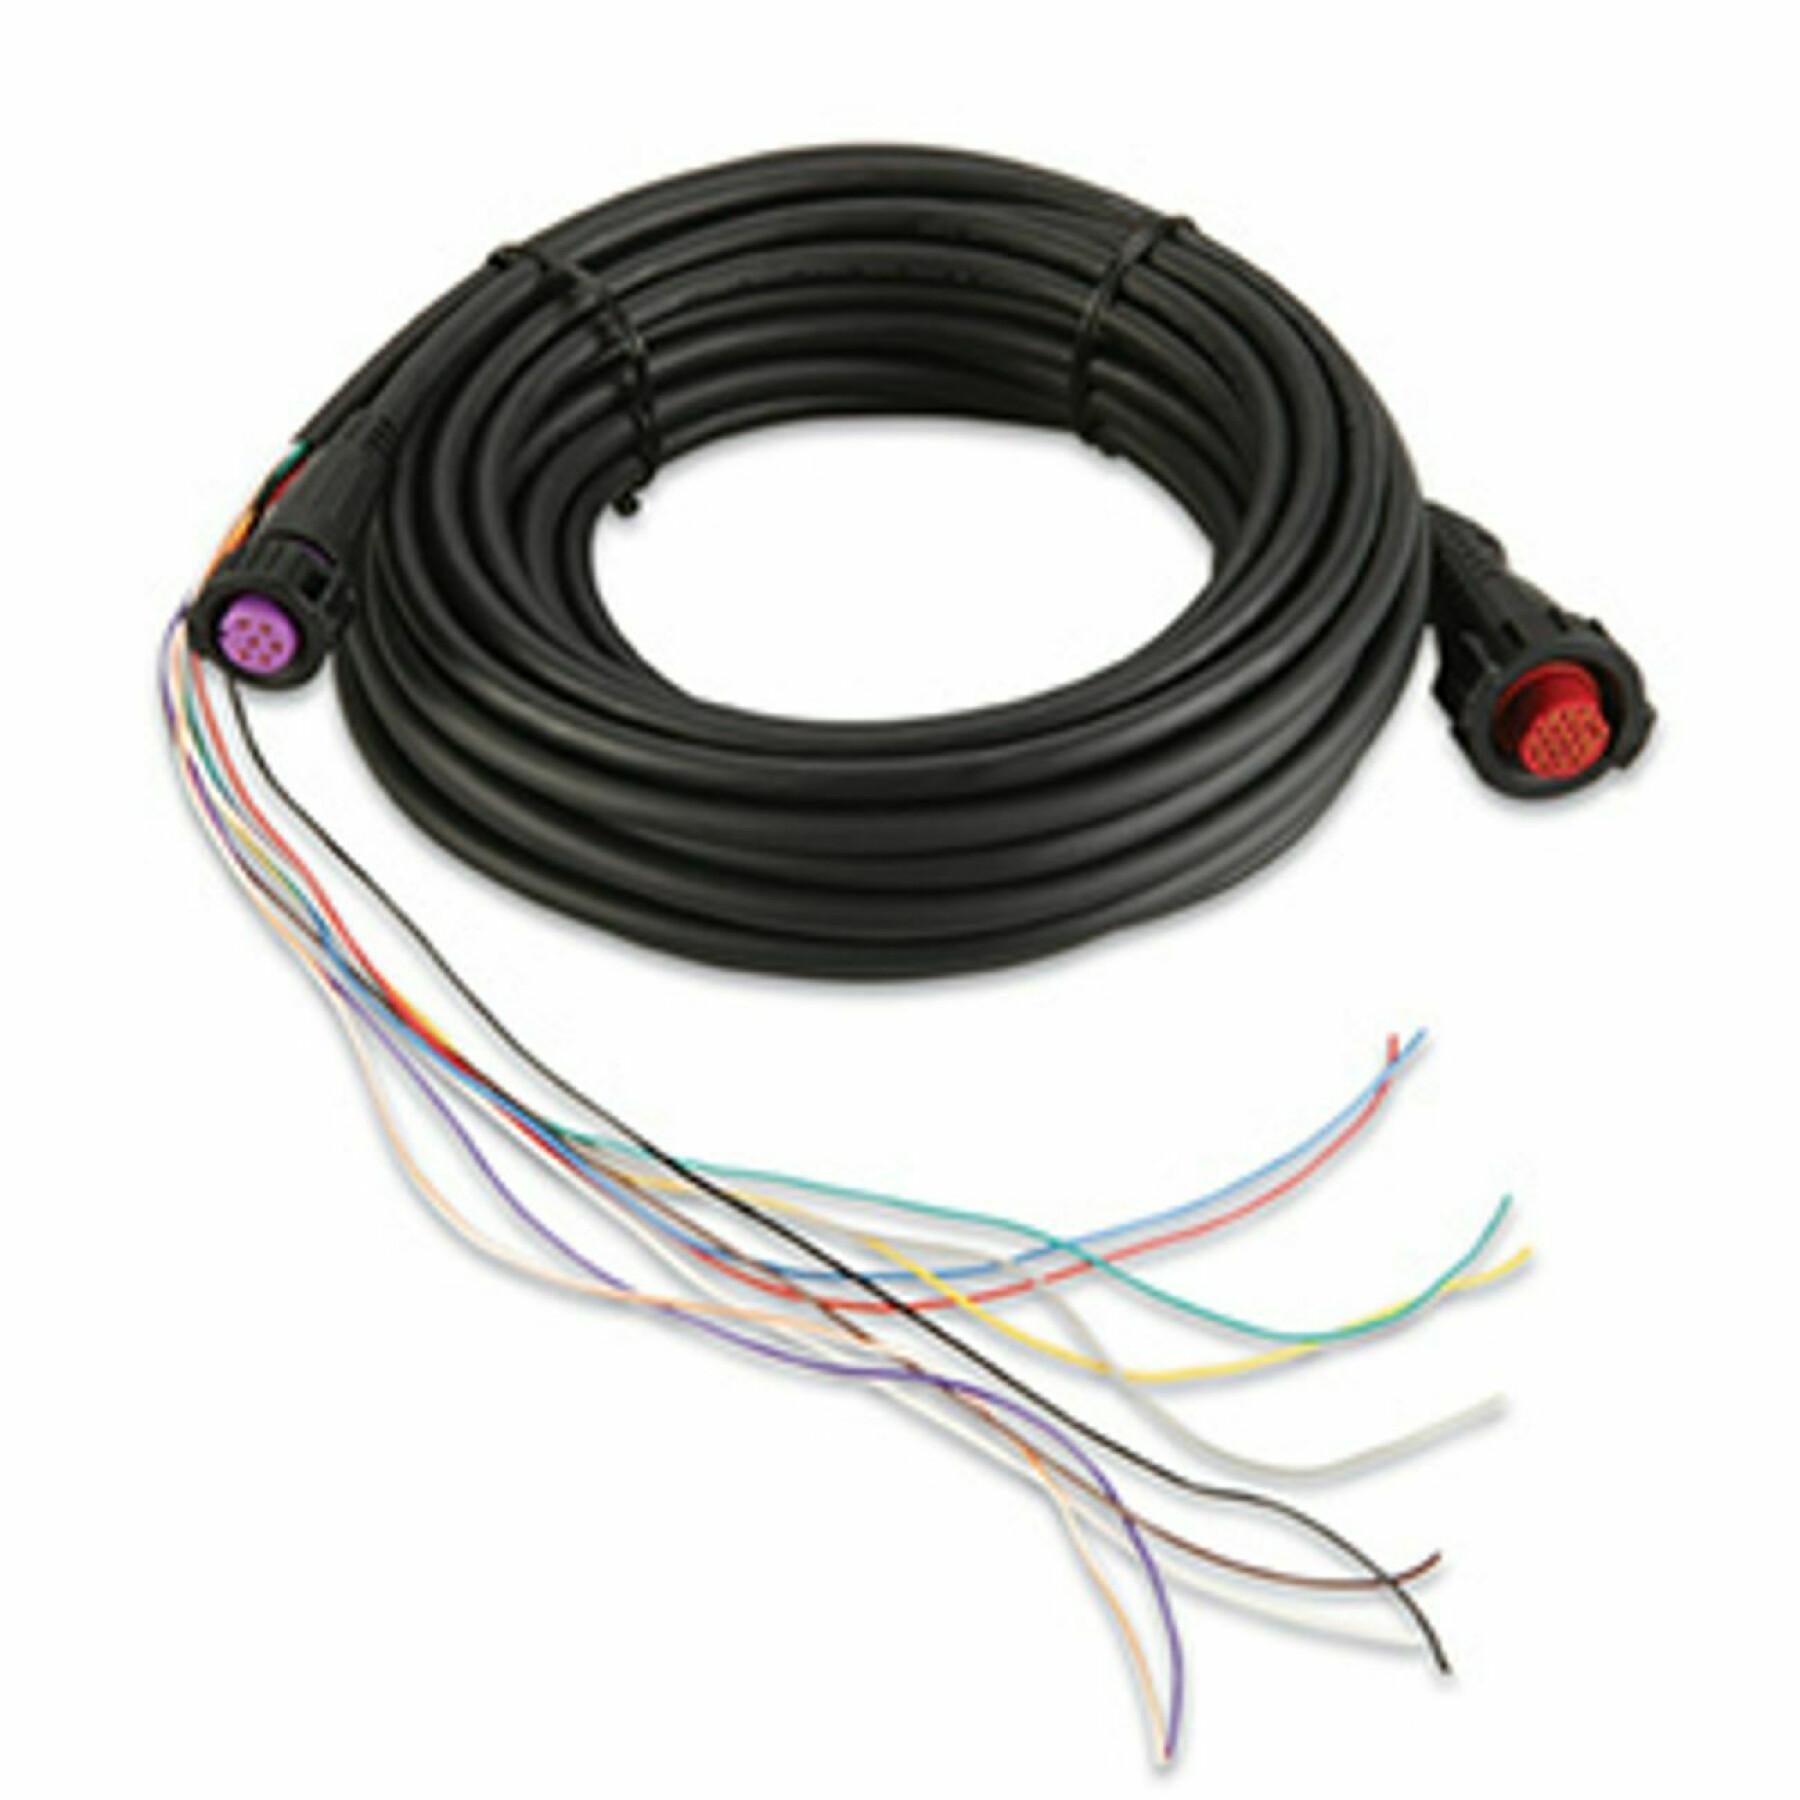 Cavo Garmin ccu/ecu interconnect cable